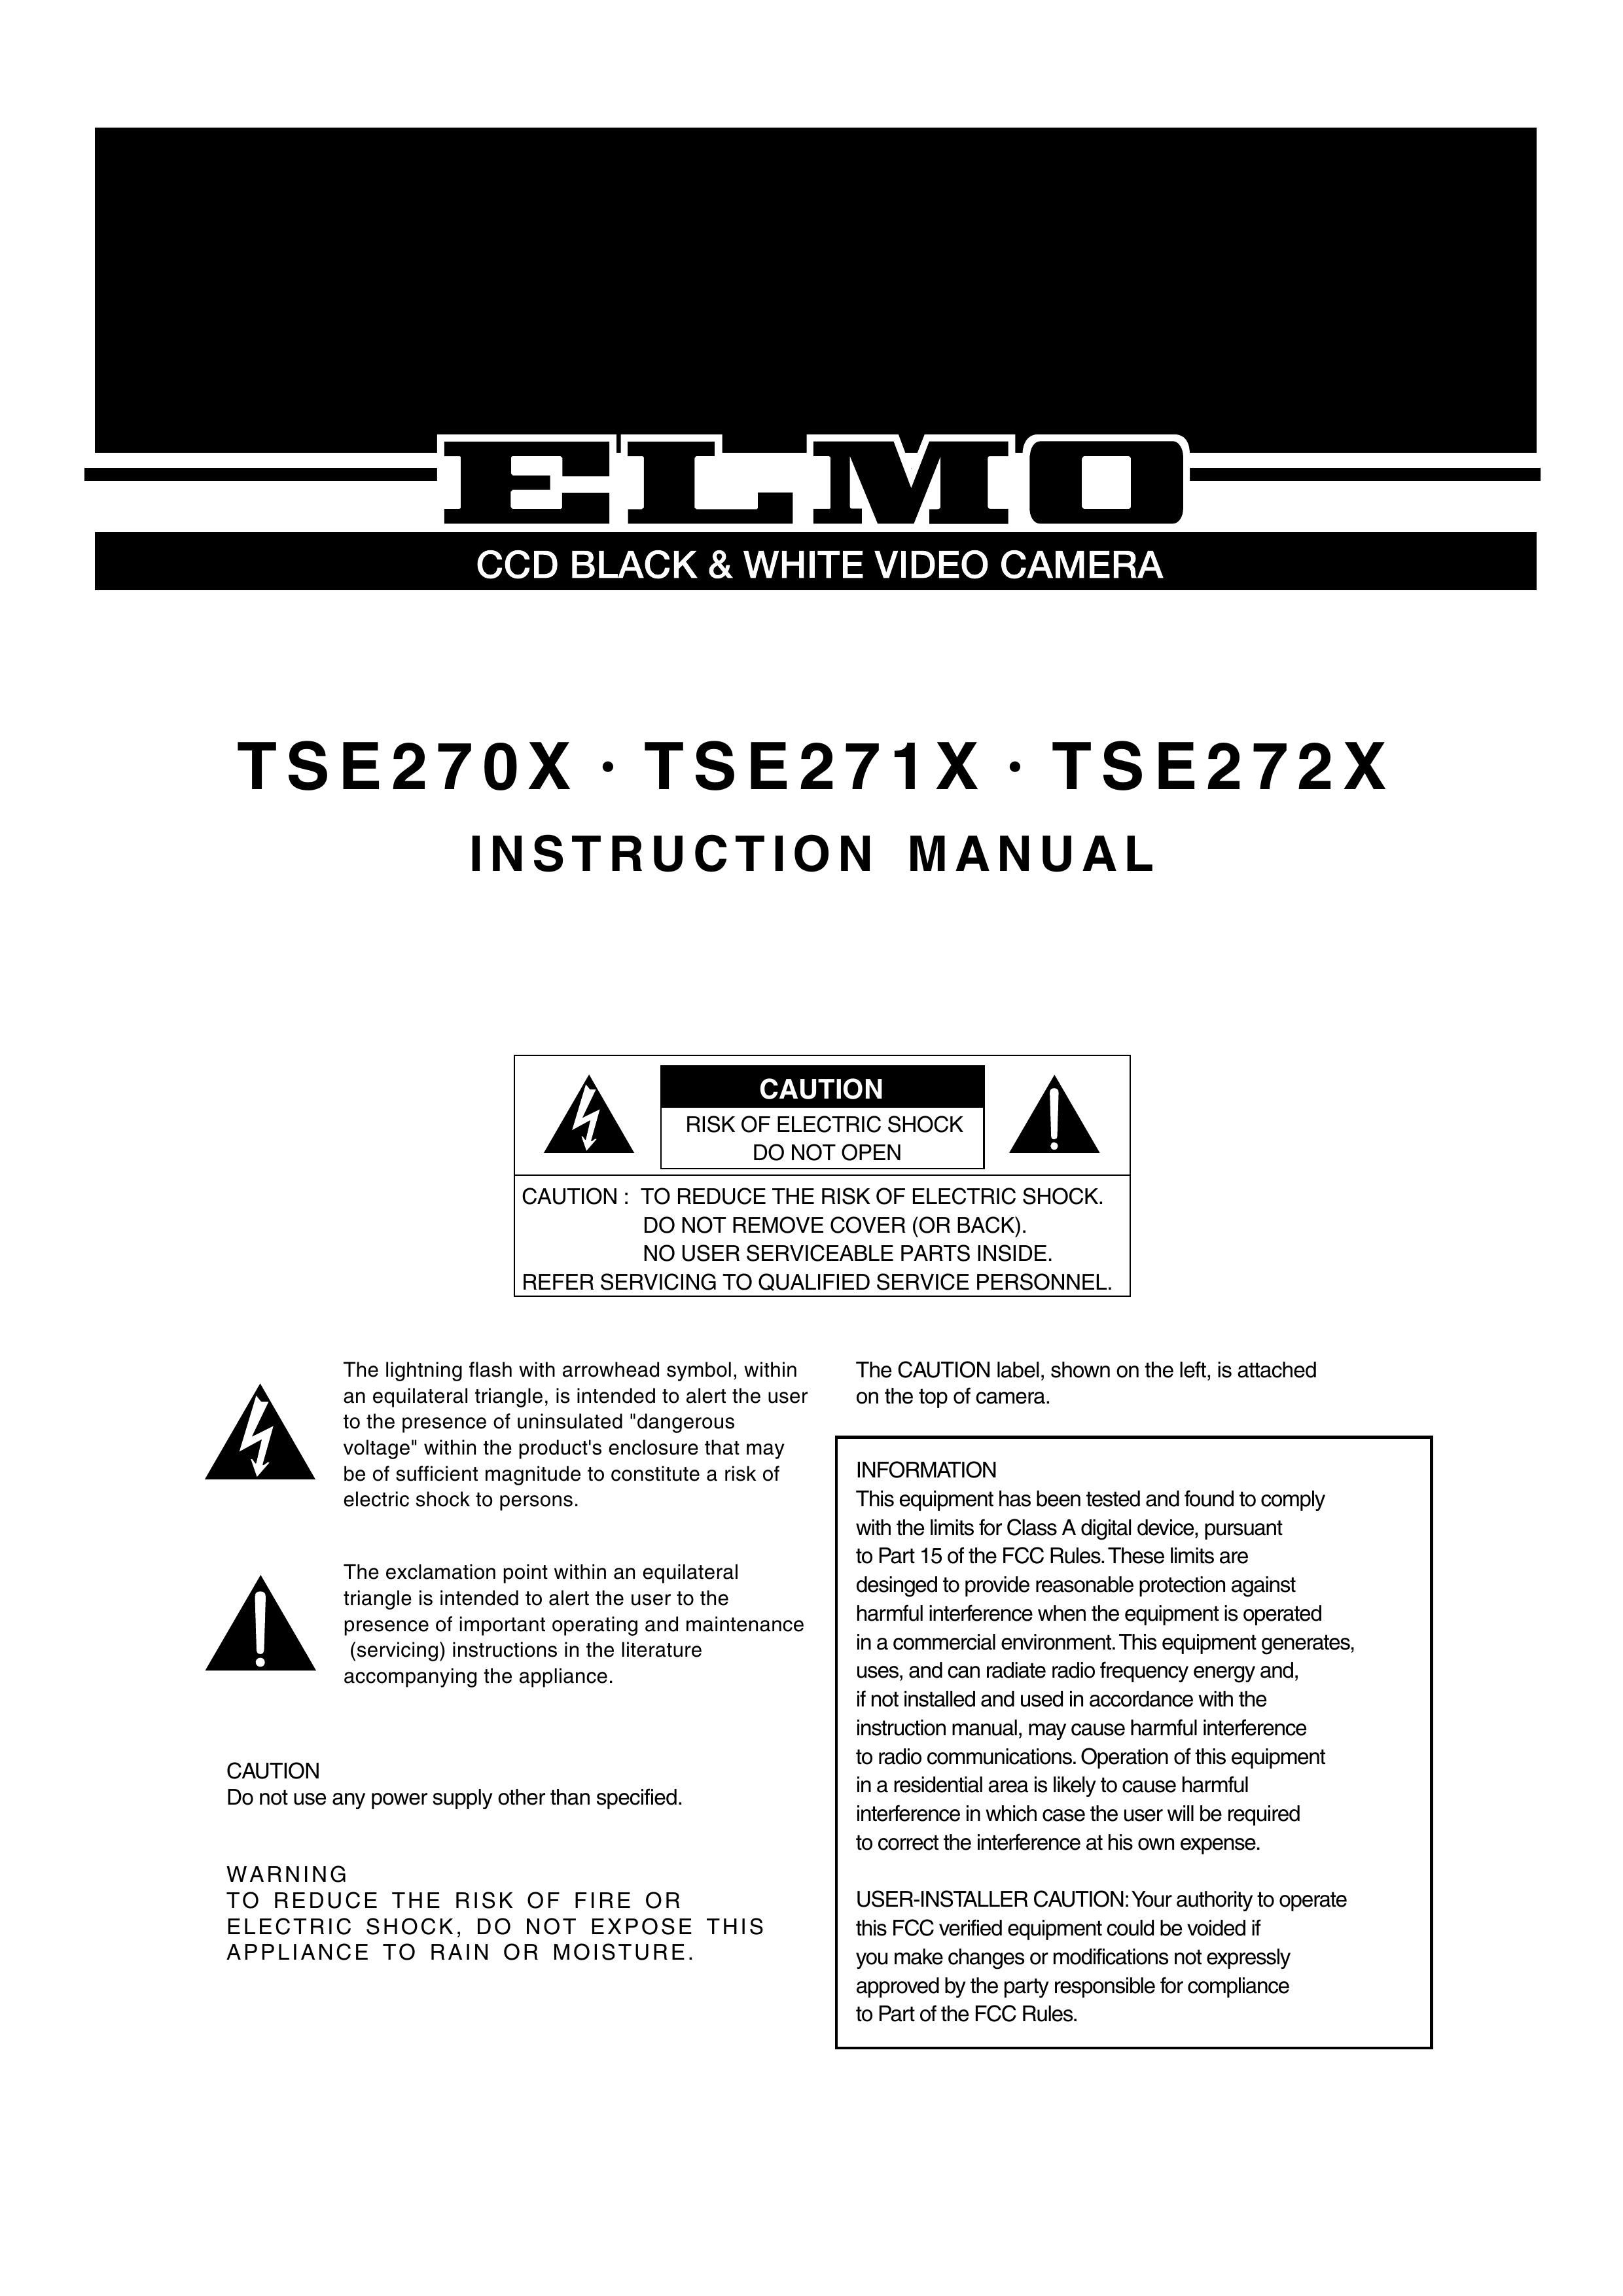 Elmo TSE270X Camcorder User Manual